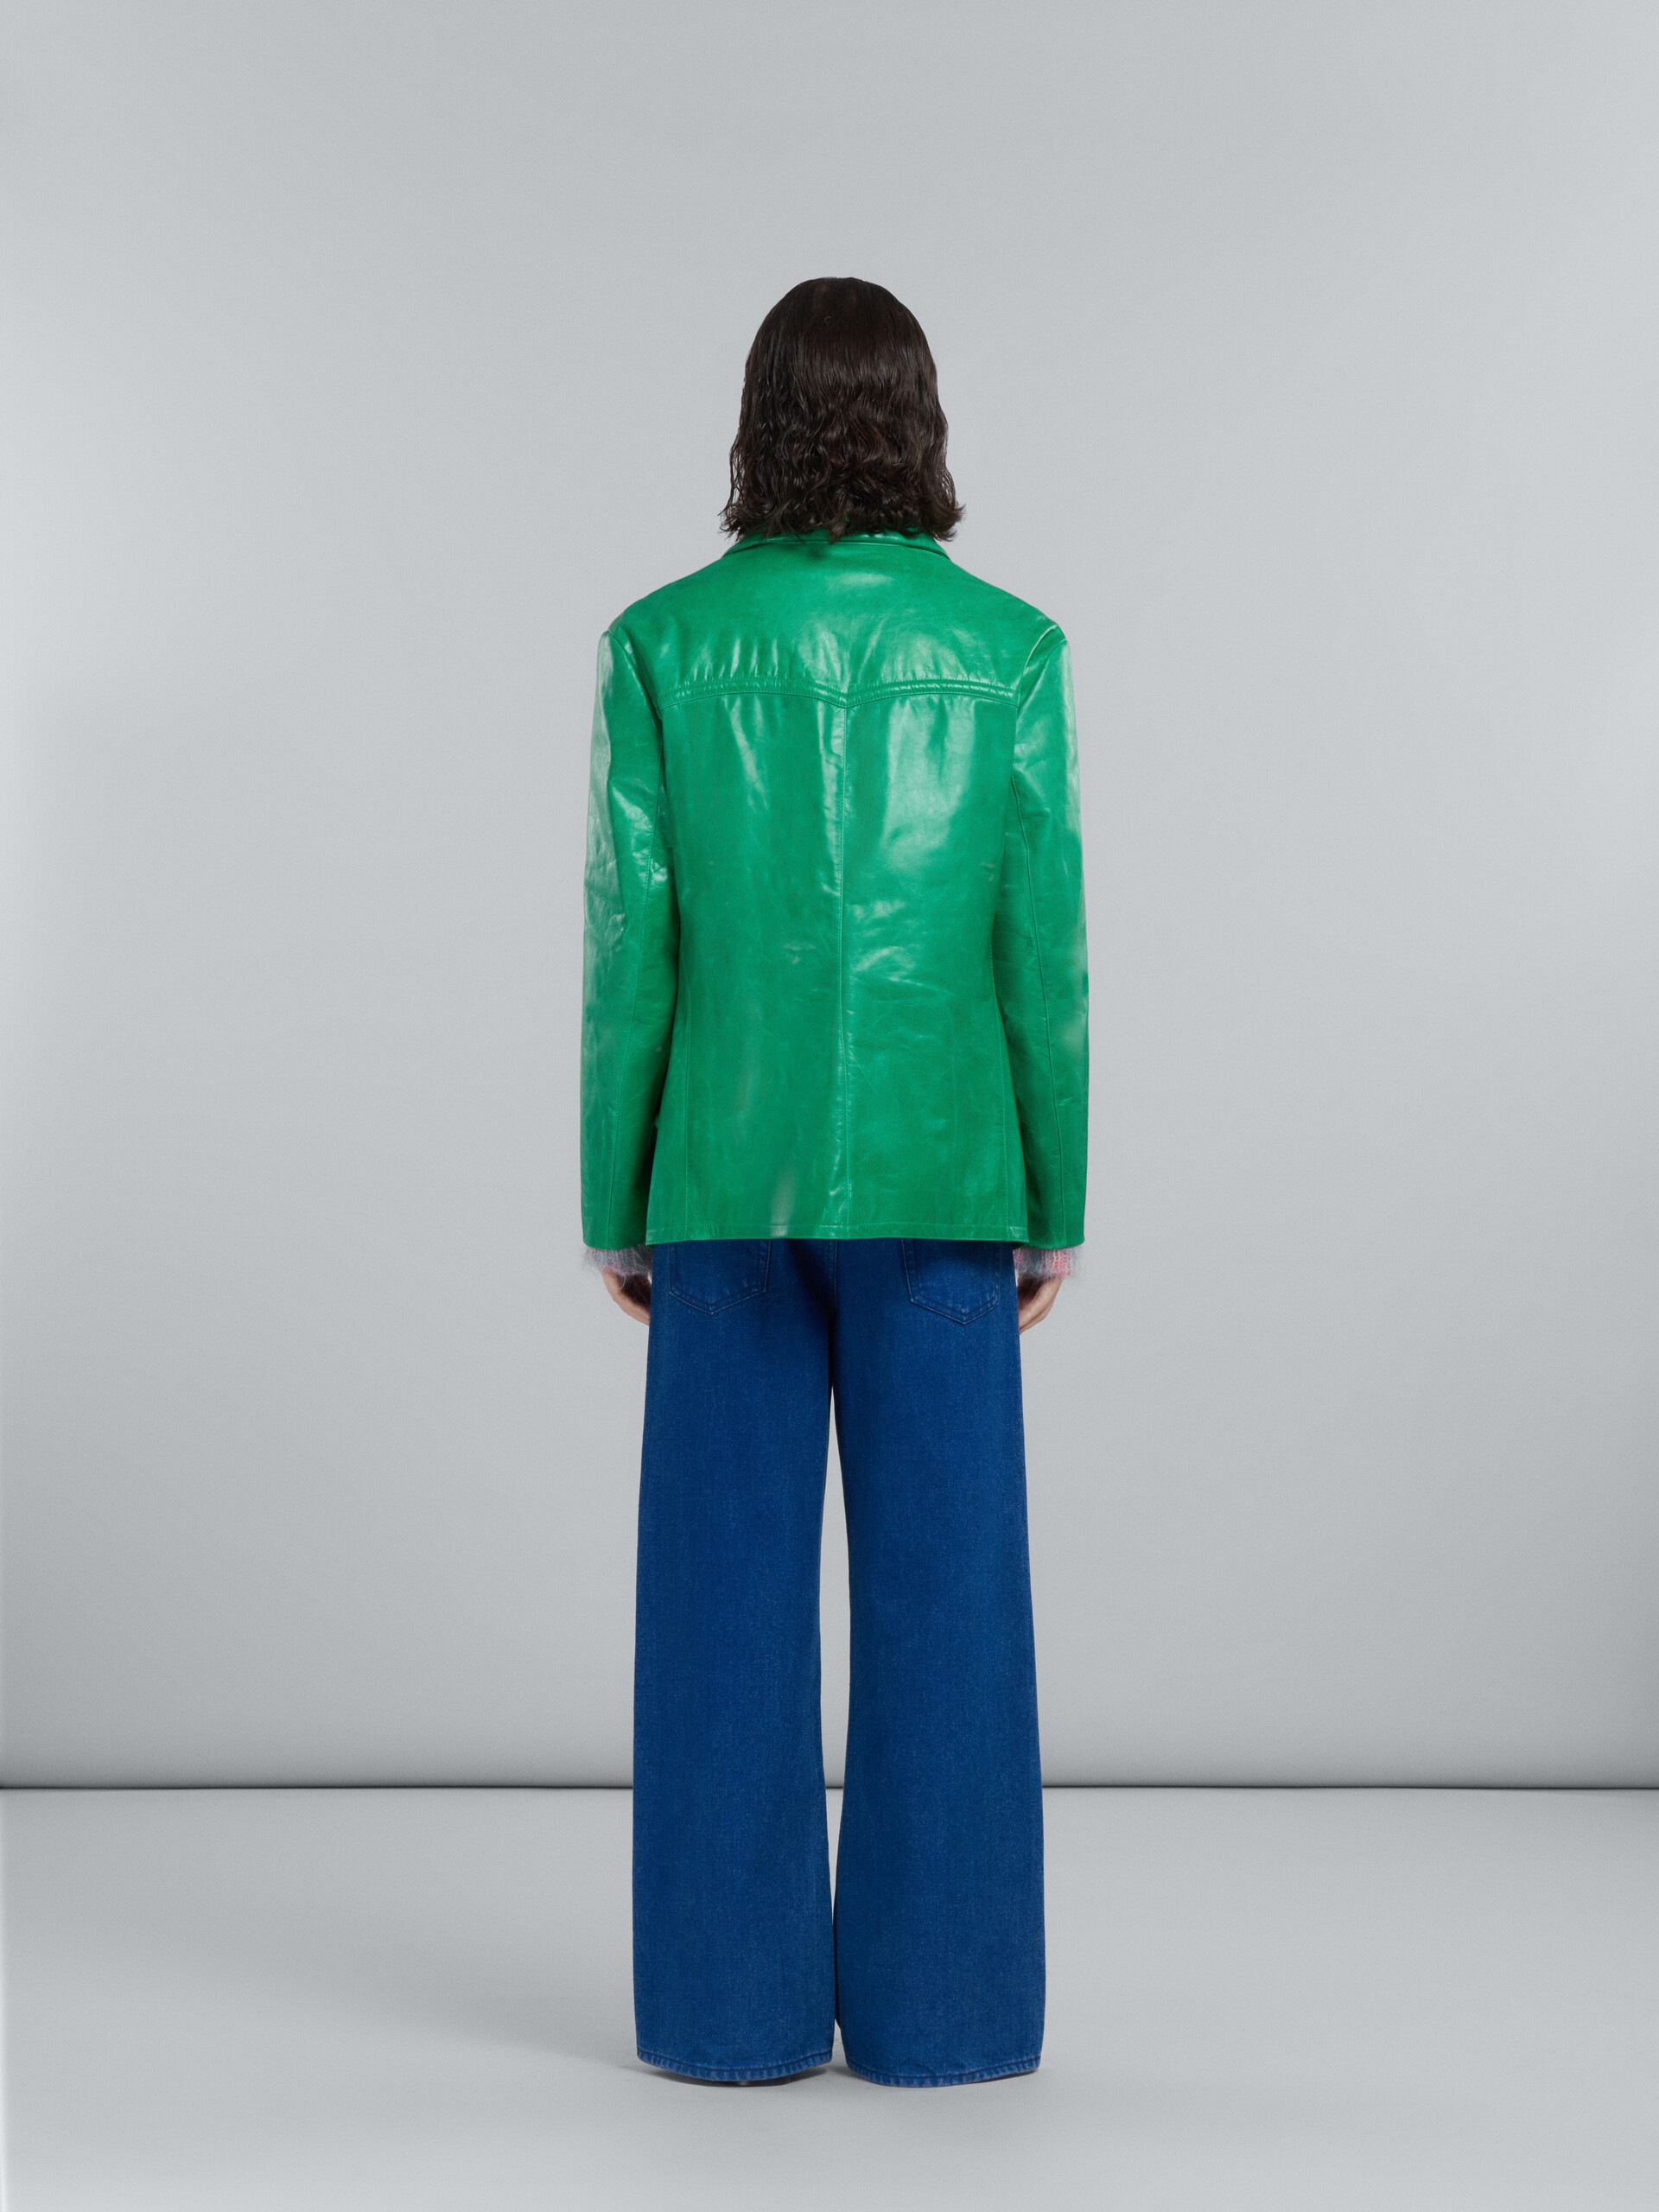 Doppelreihige Jacke aus glänzendem grünem Leder - Mäntel - Image 3